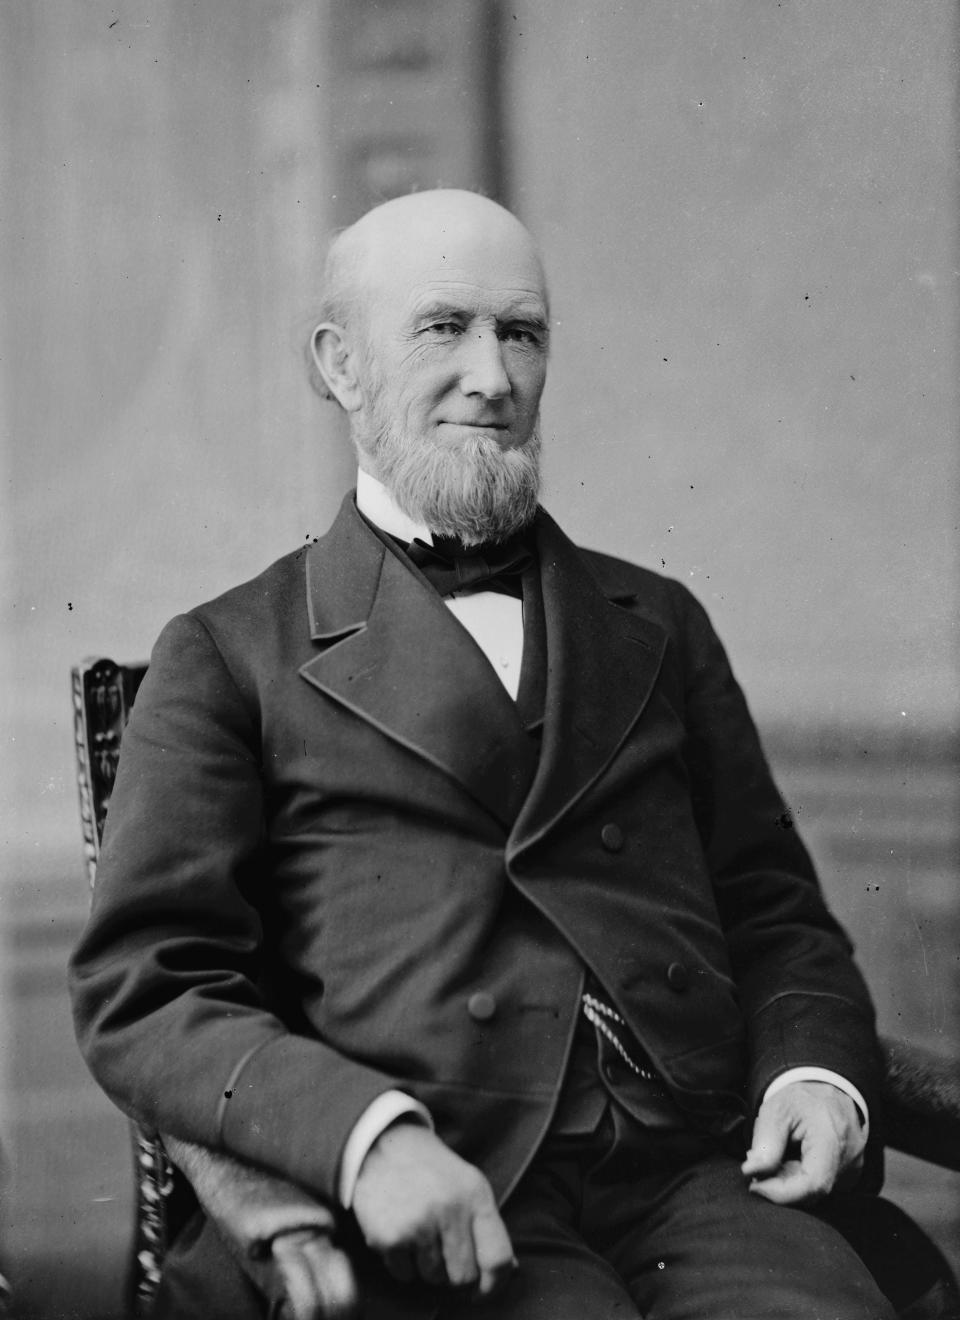 James B. Eads, in a photo taken by Matthew Brady sometime between 1865-1880